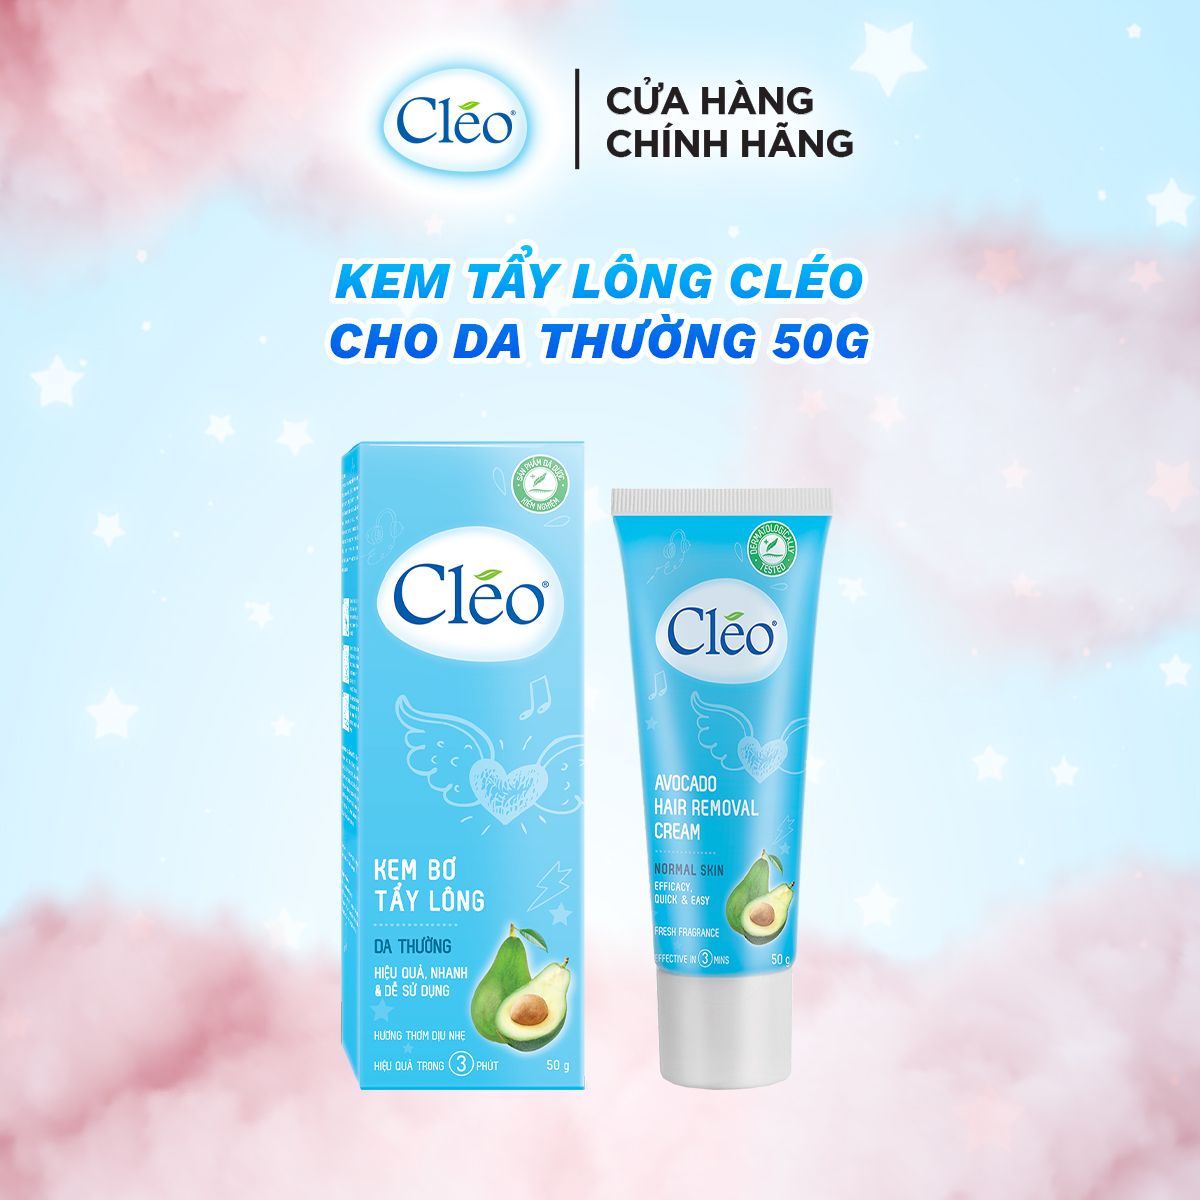  Kem tẩy lông Cleo da thường 50g 